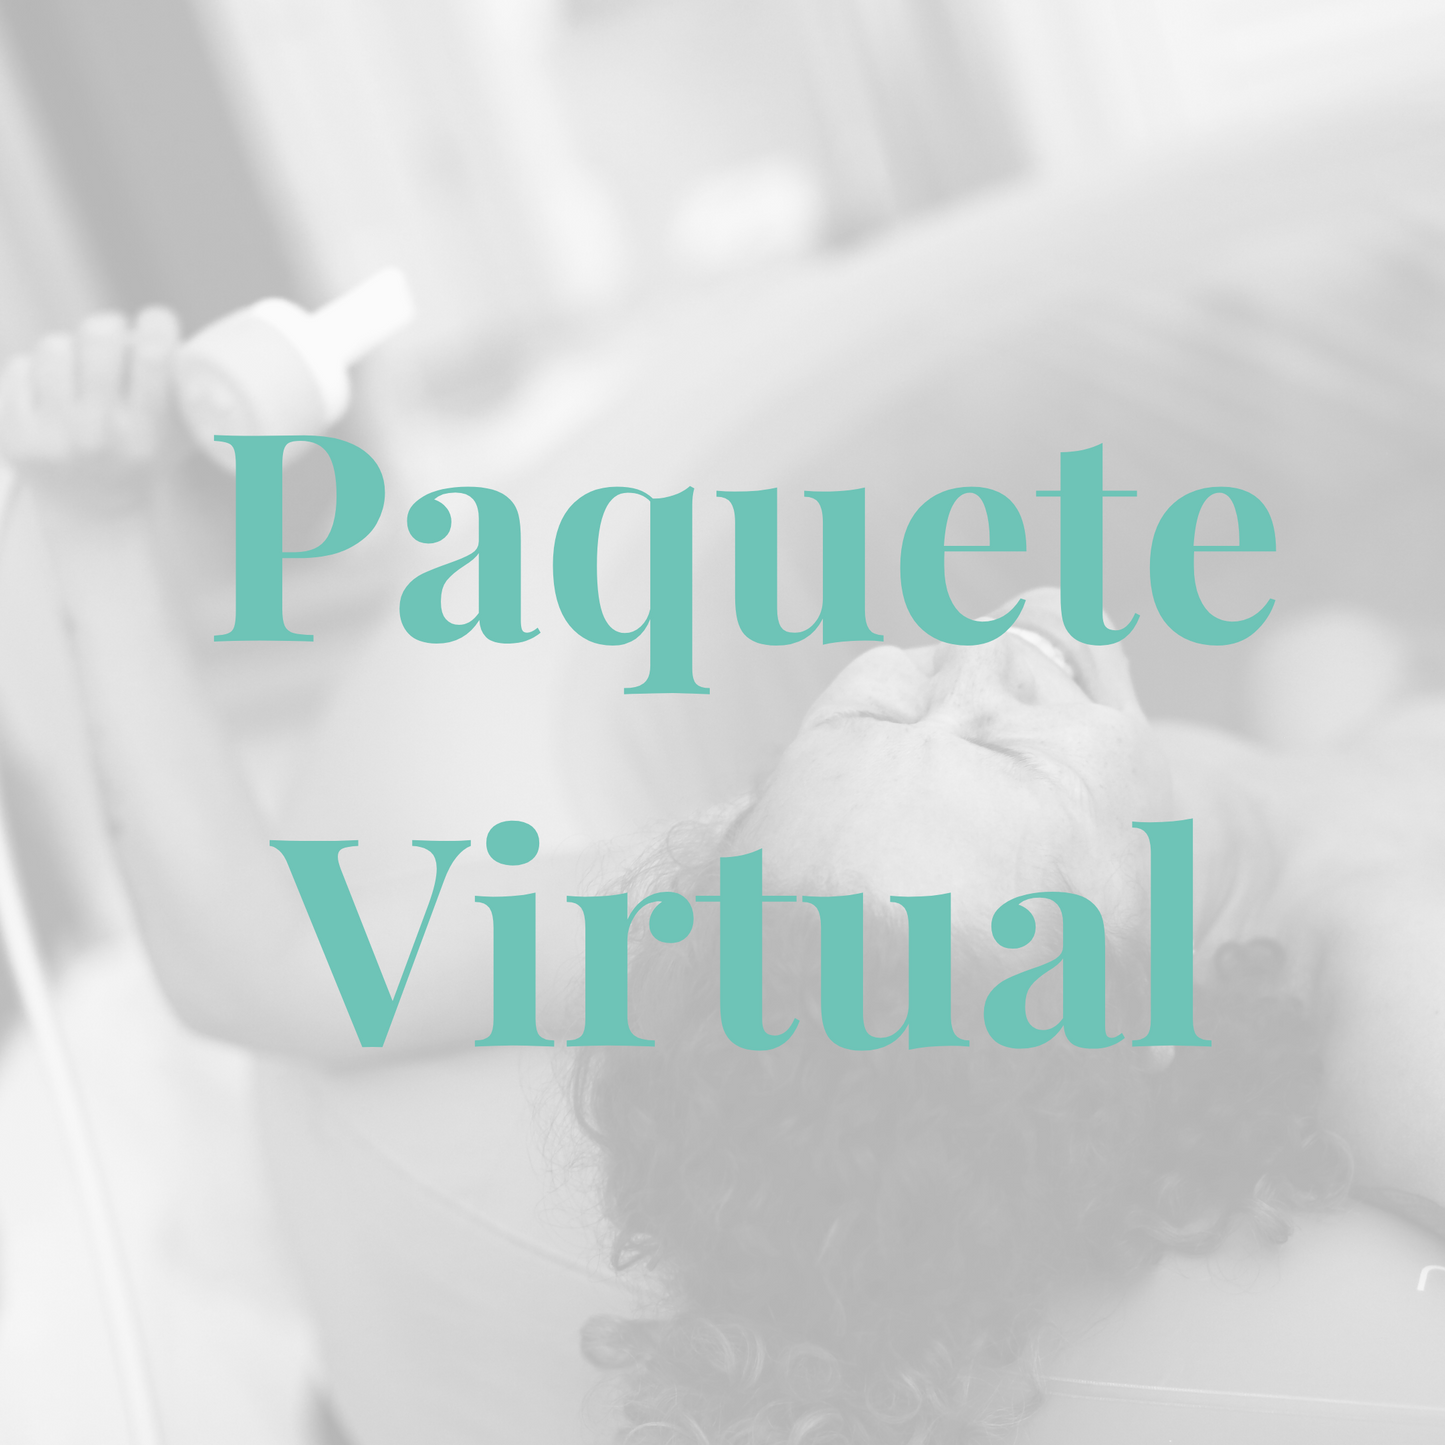 Doula - Paquete Virtual - Acompañamiento al parto